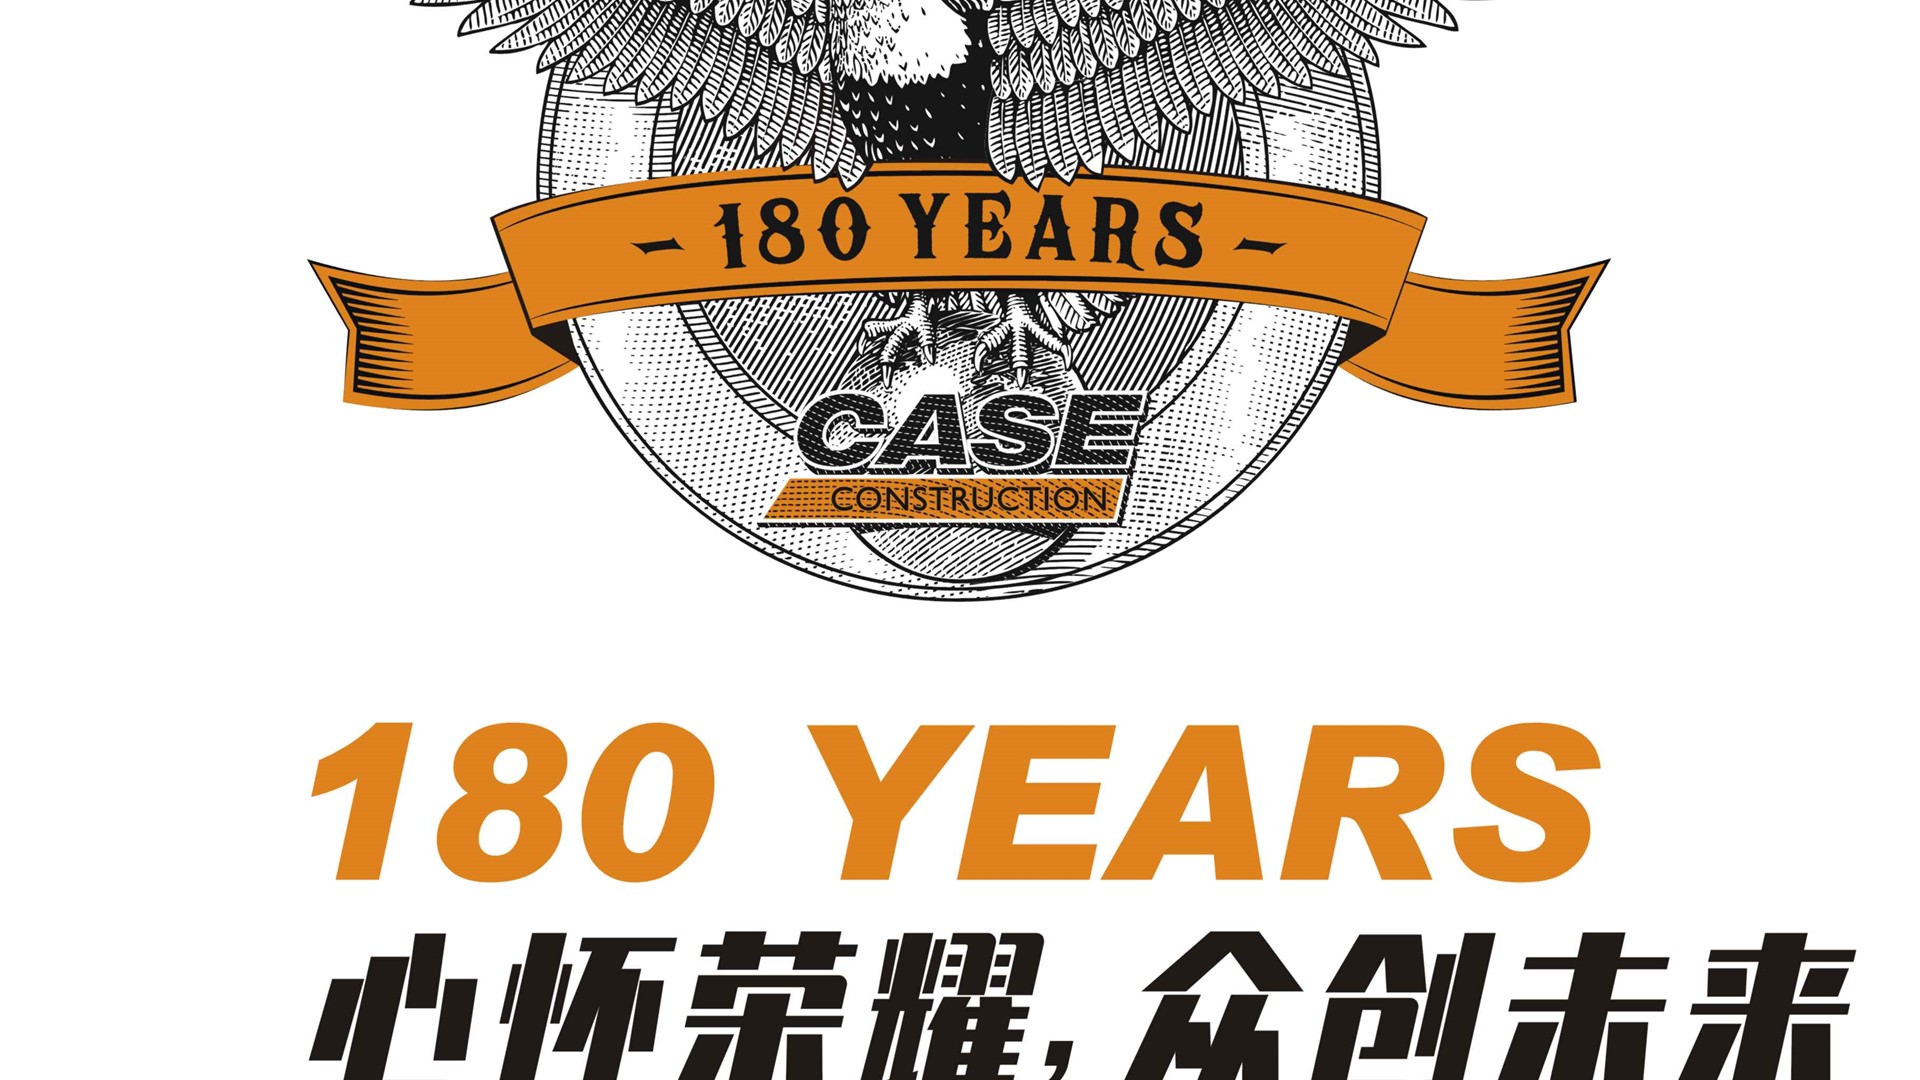 1842—2022，庆祝凯斯工程机械品牌成立180周年